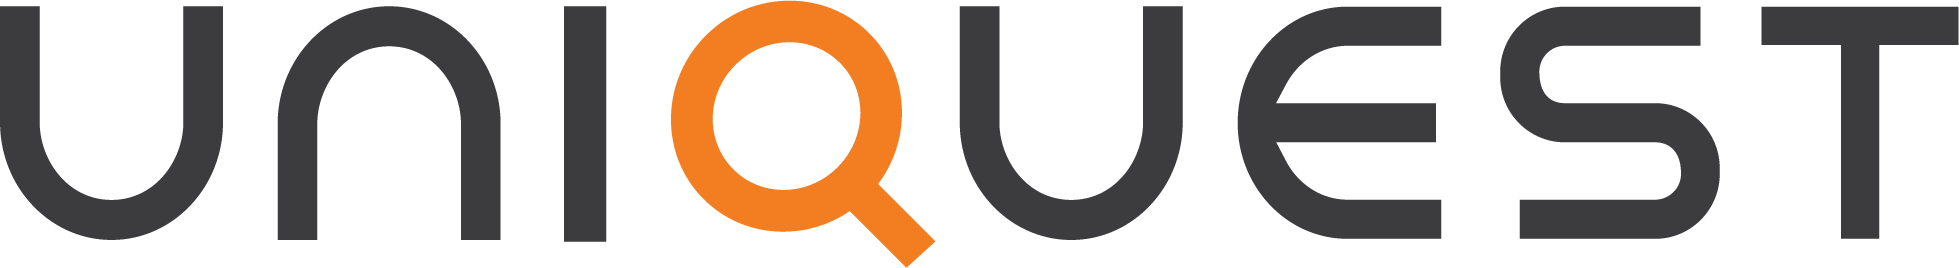 uniquest logo